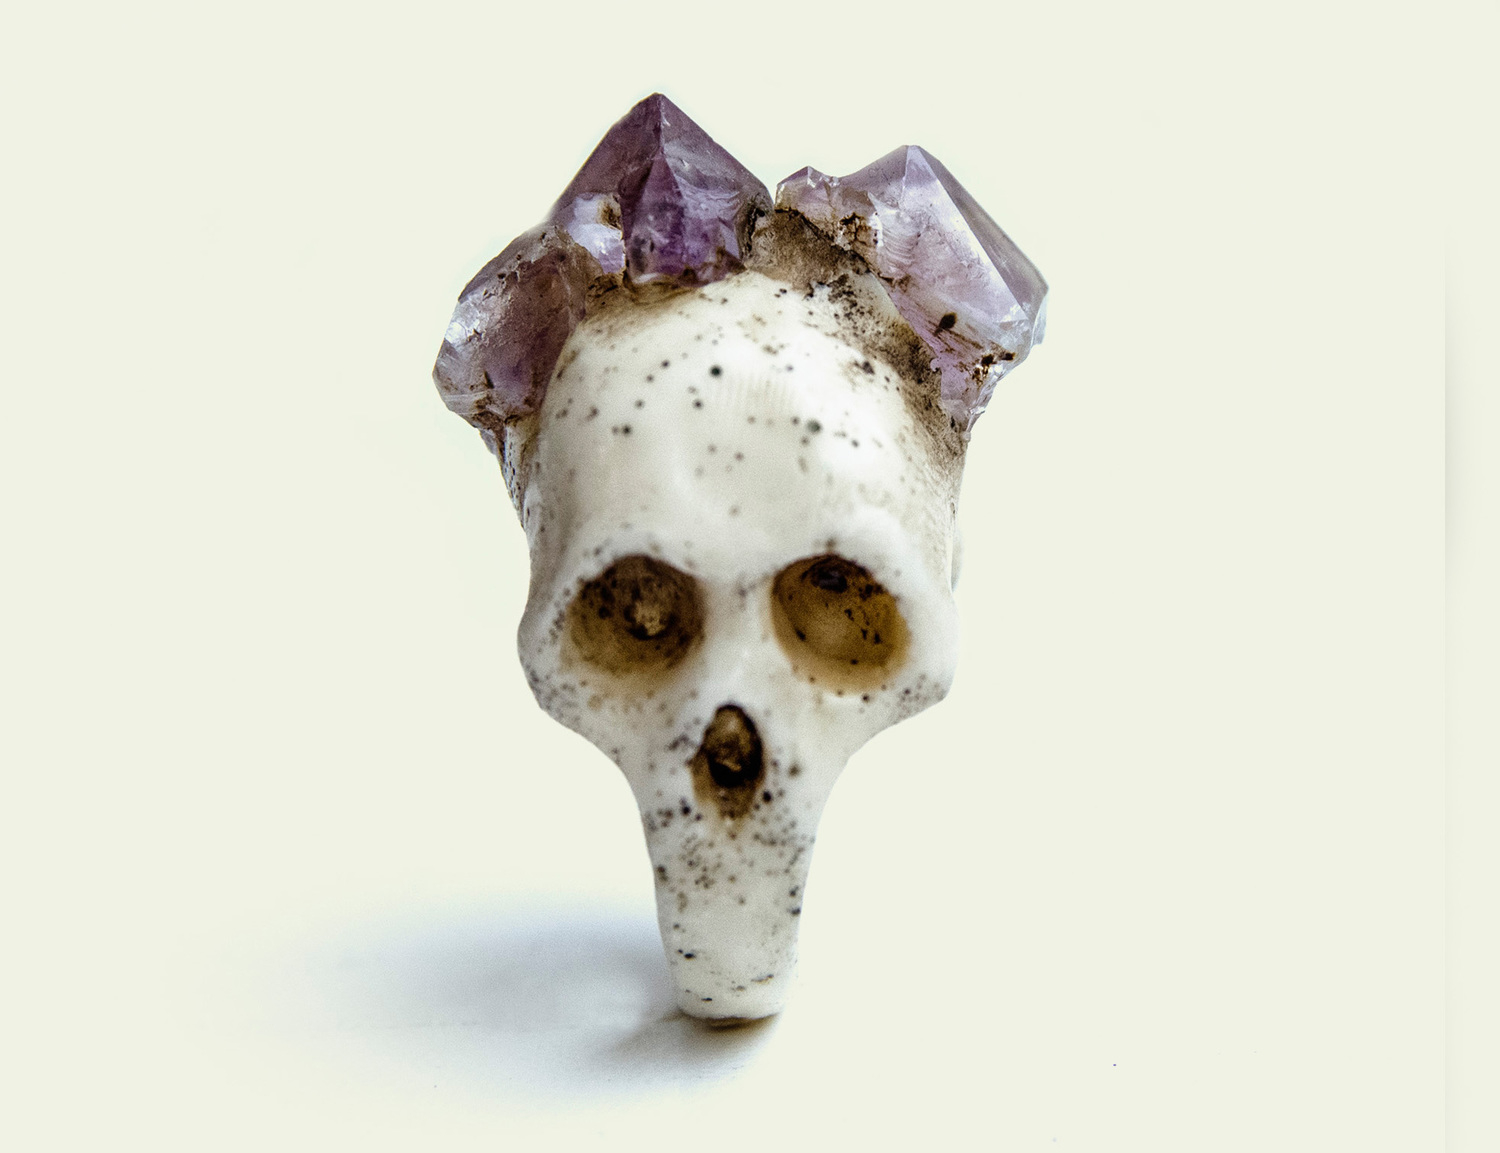 Macabre Gadgets – Bifacial Skull / Beautiful rings